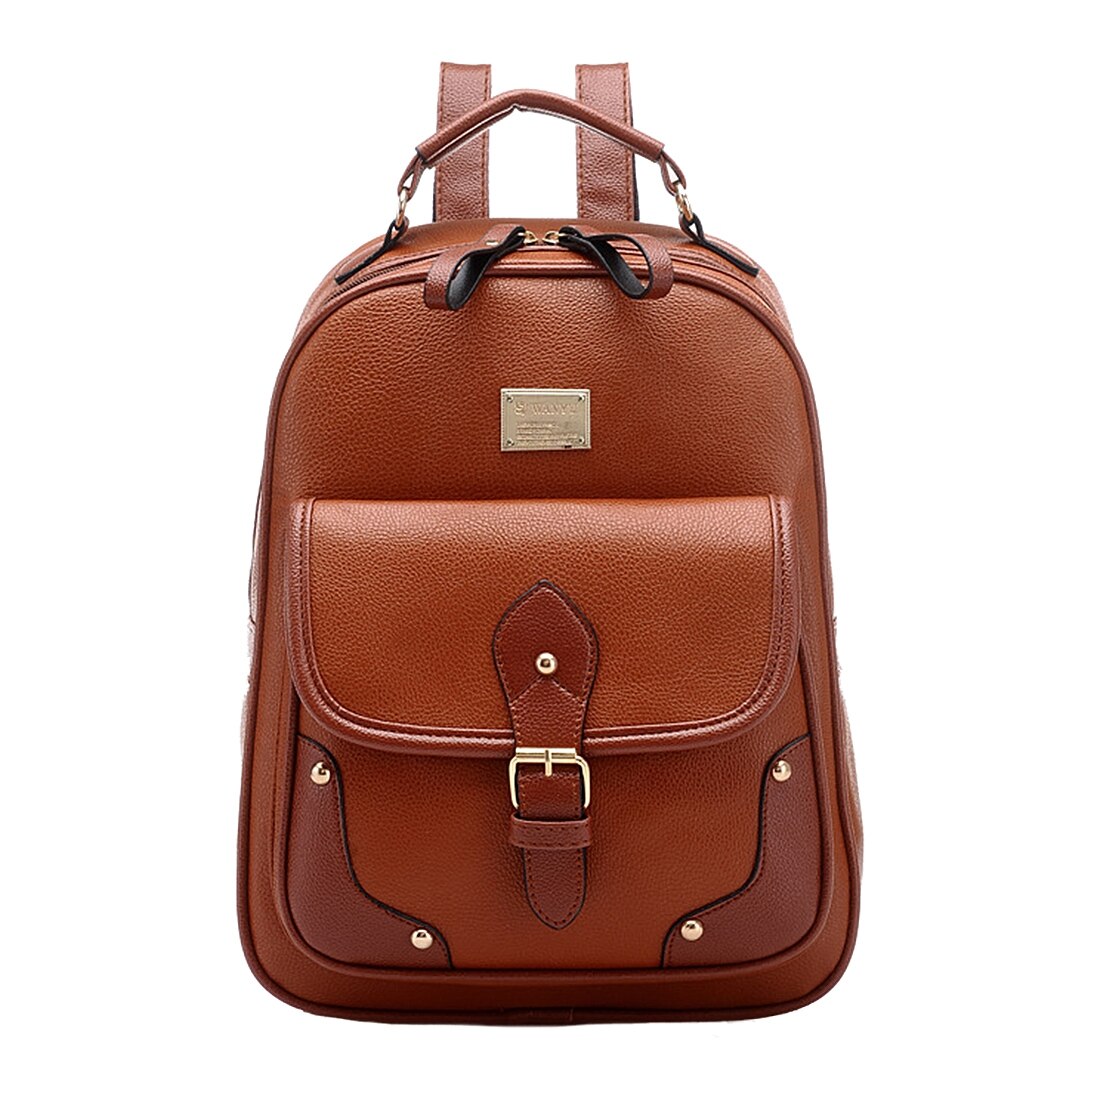 Vintage Leather Backpack Rucksack Shoulder Travel School Bag Knapsack Brown - ebowsos